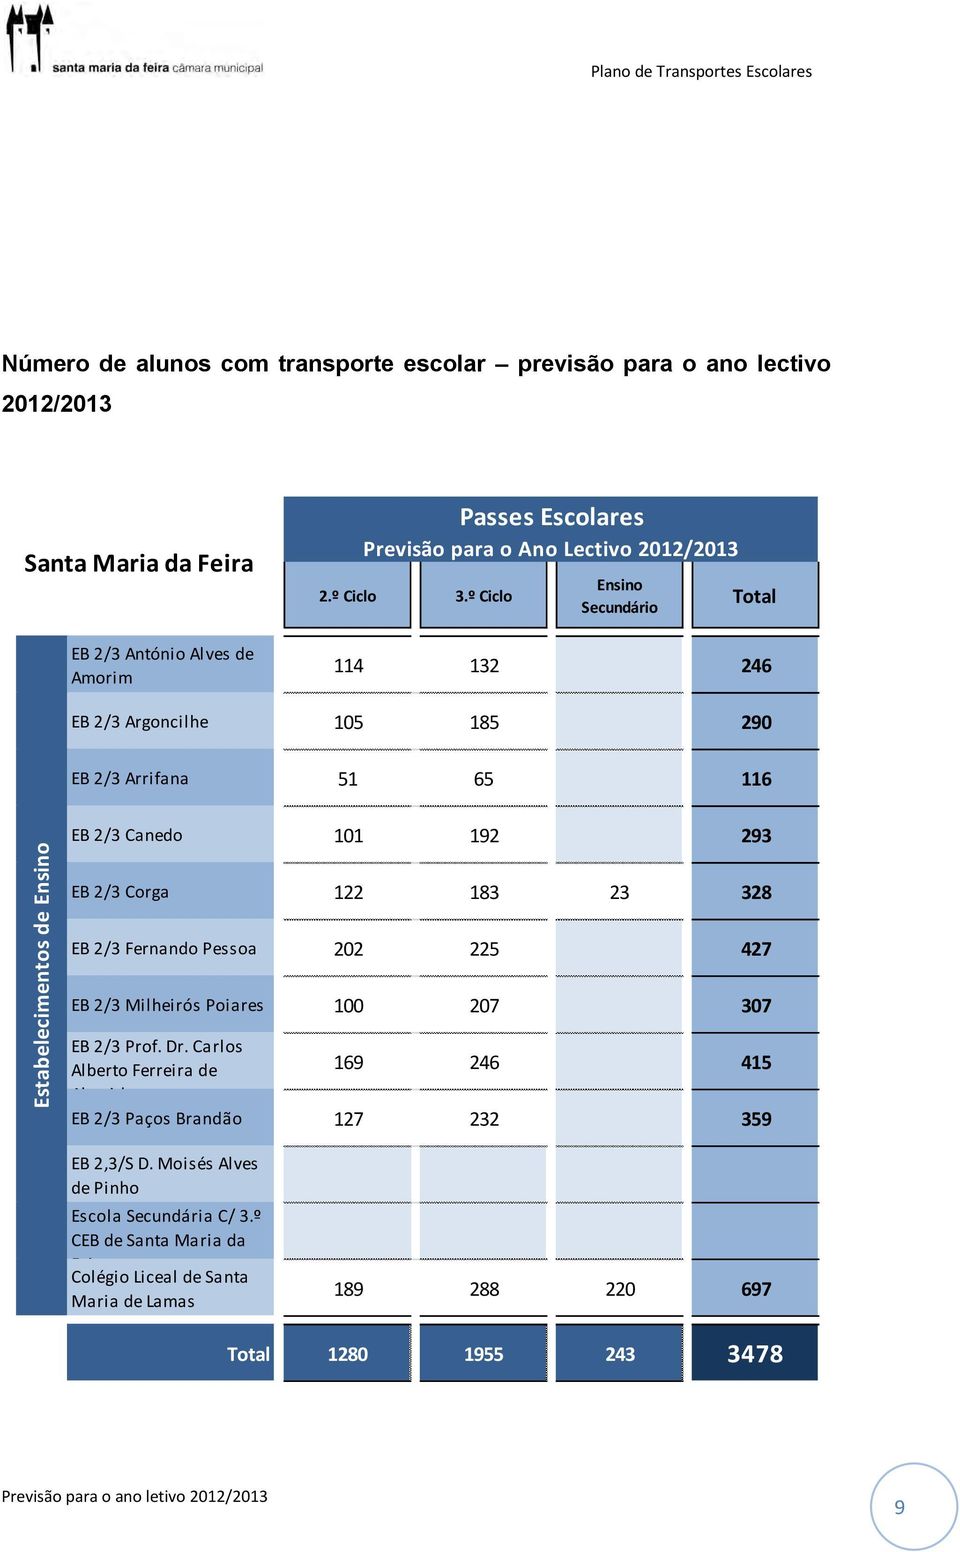 Número de alunos com transporte escolar previsão para o ano lectivo 2012/2013 Santa Mariada Feira EB 2/3 António Alves de Amorim Passes Escolares Previsão para o Ano Lectivo 2012/2013 2.º Ciclo 3.